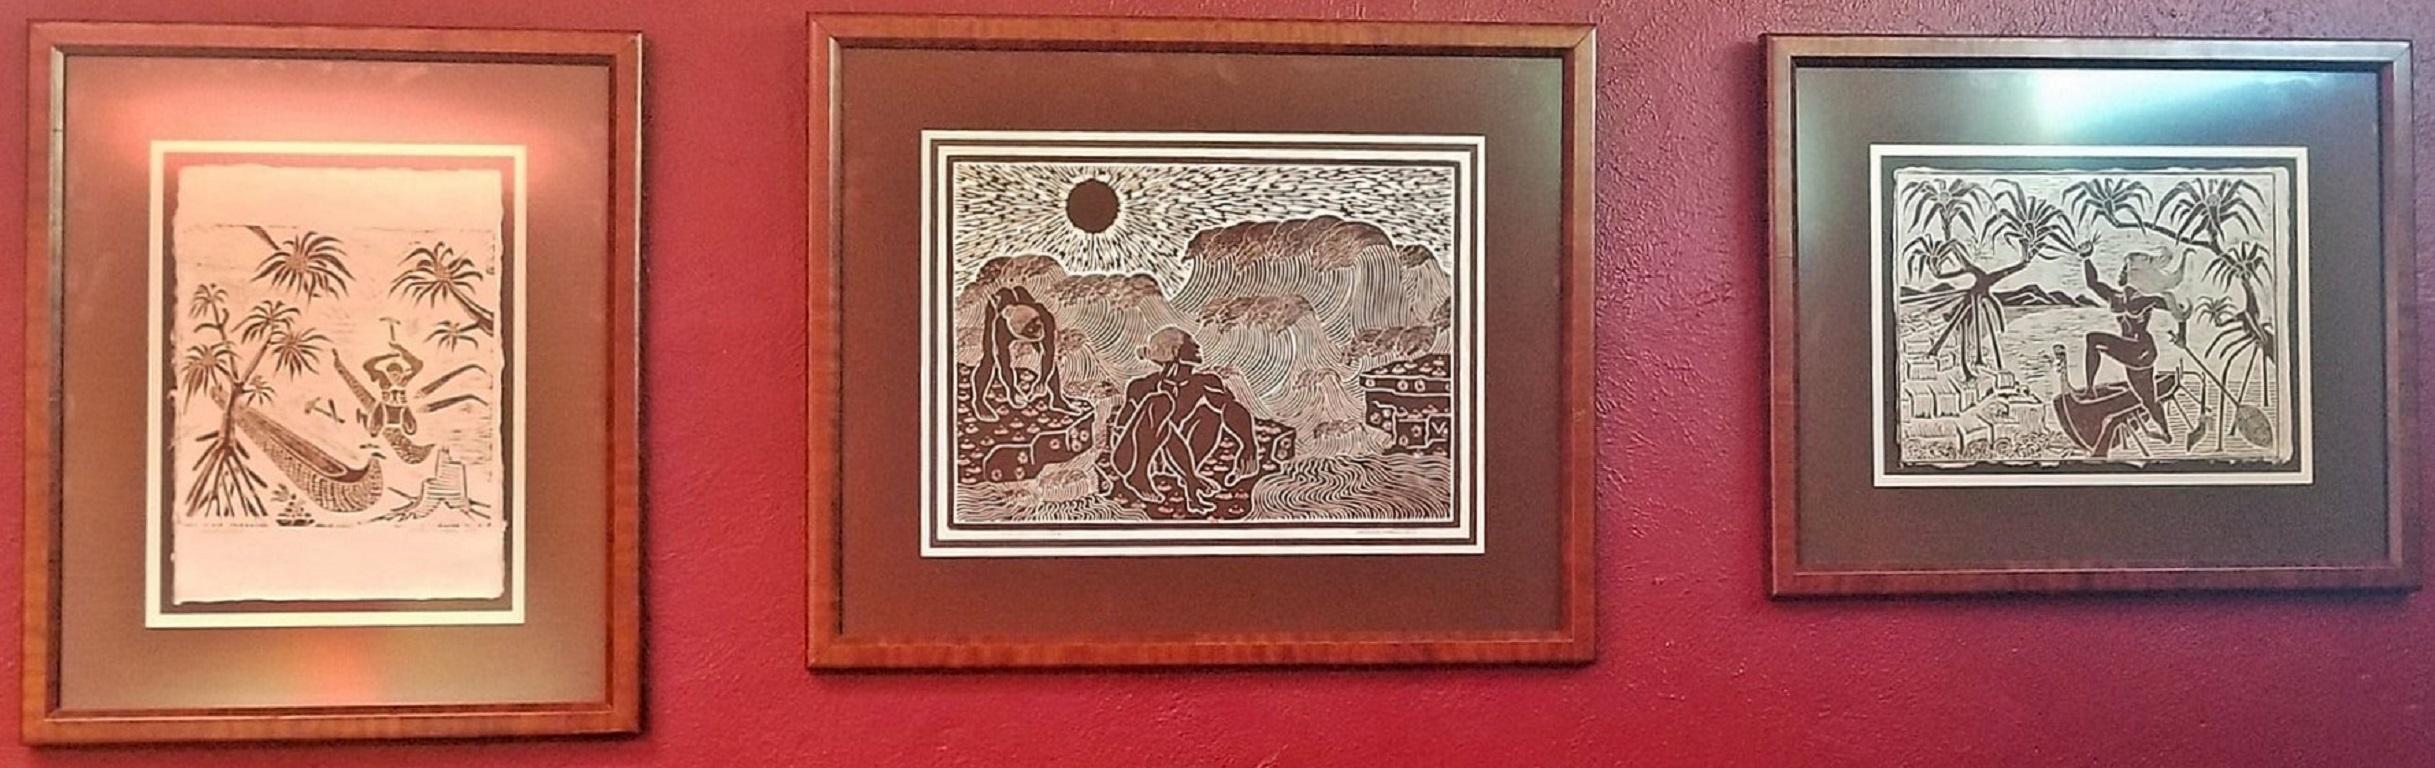 PRÄSENTIEREN Sie einen schönen mittelgroßen Holzblockdruck des 'Cano Maker' von Dietrich Varez -1979. Signiert vom Künstler.

Bekannter amerikanischer/hawaiischer Künstler, Dietrich Varez, in schönem Original-Holzrahmen, aus dem Jahr